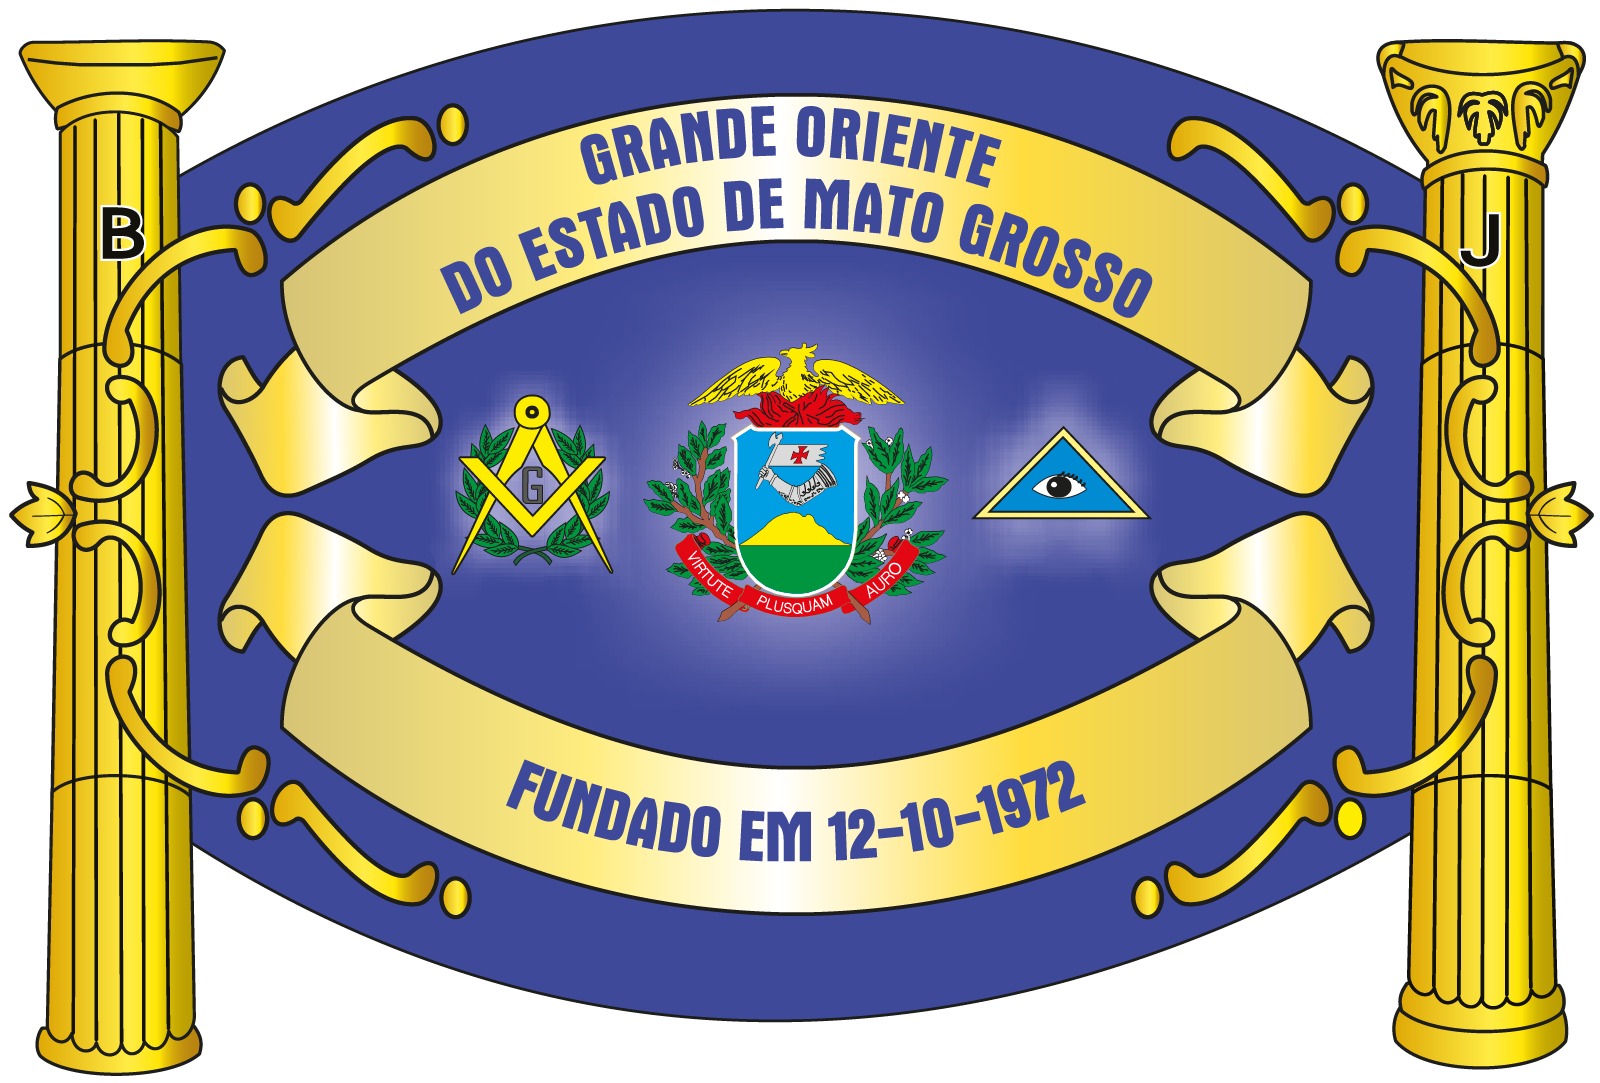 Grande Oriente do Estado de Mato Grosso